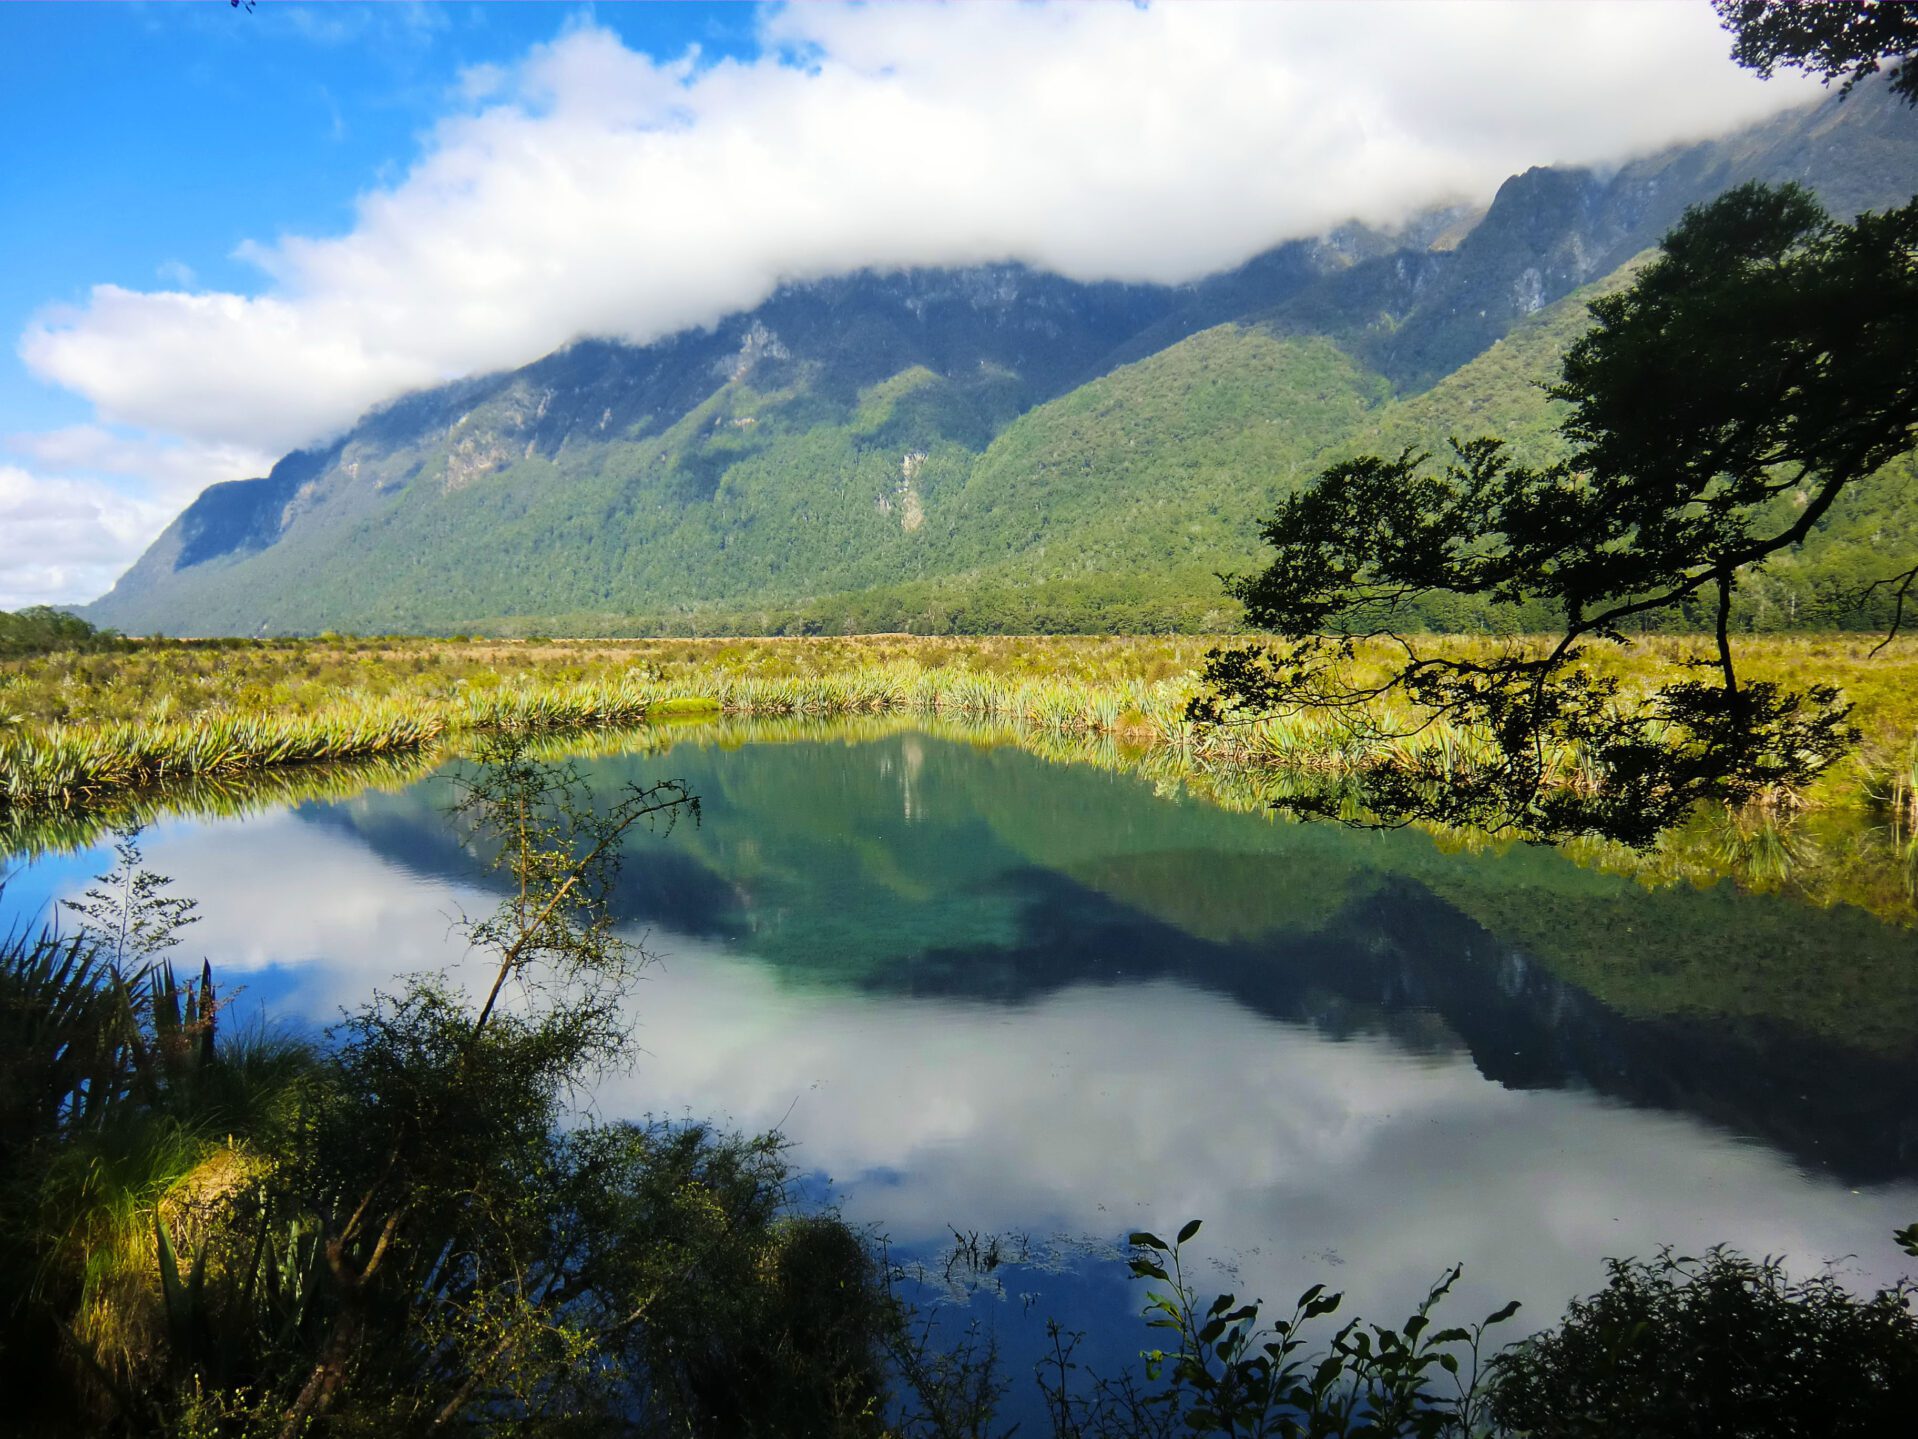 Nieuw-Zeeland reisinformatie voor jouw vakantie